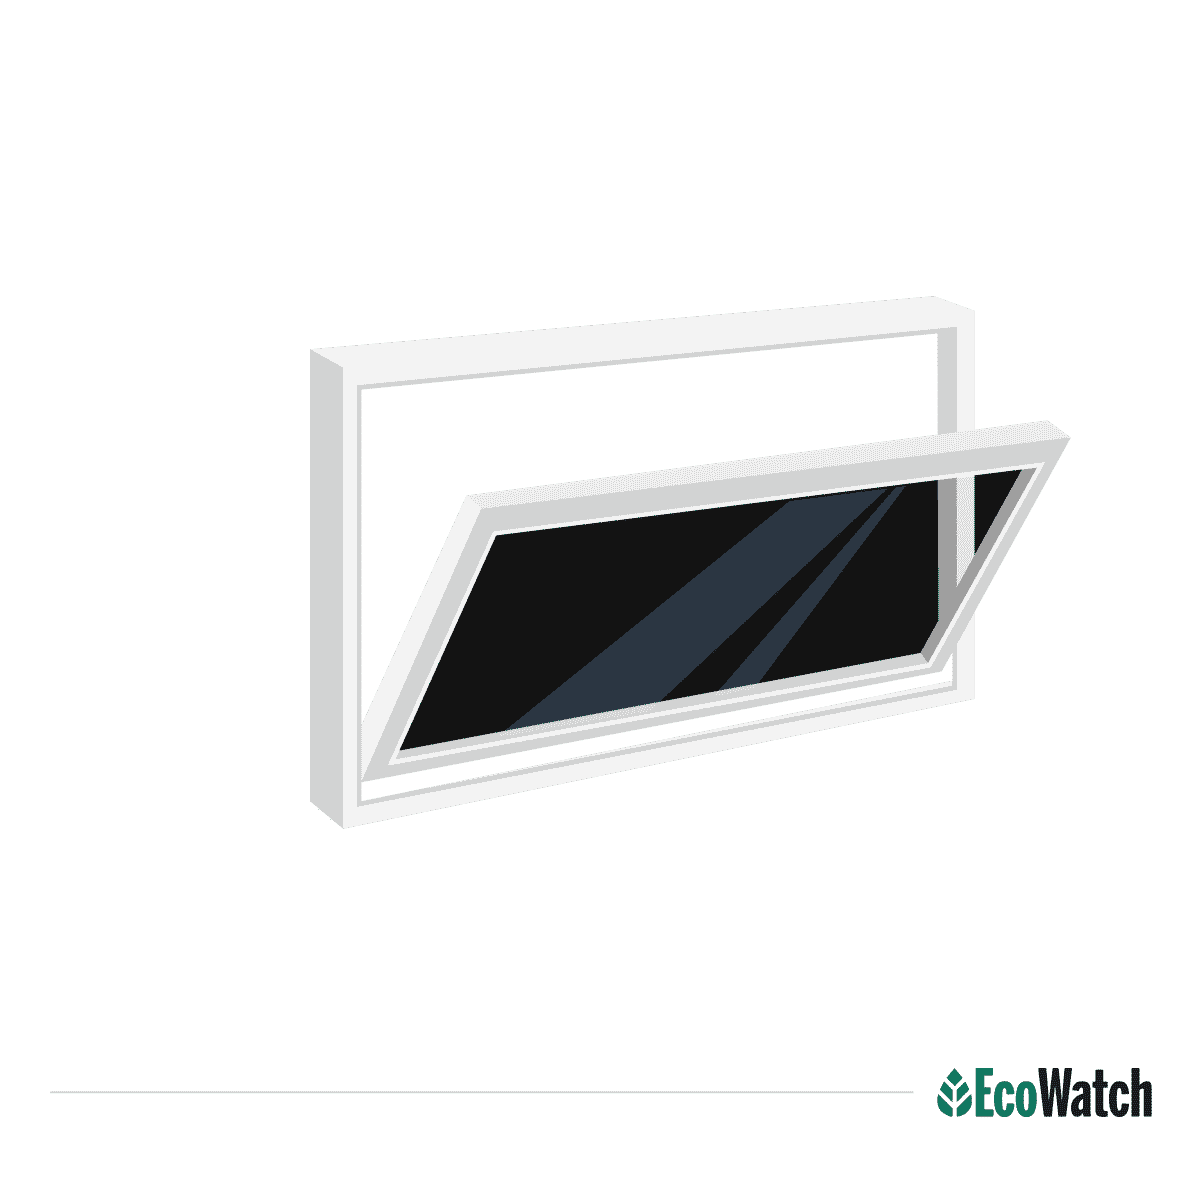 Hopper Window type